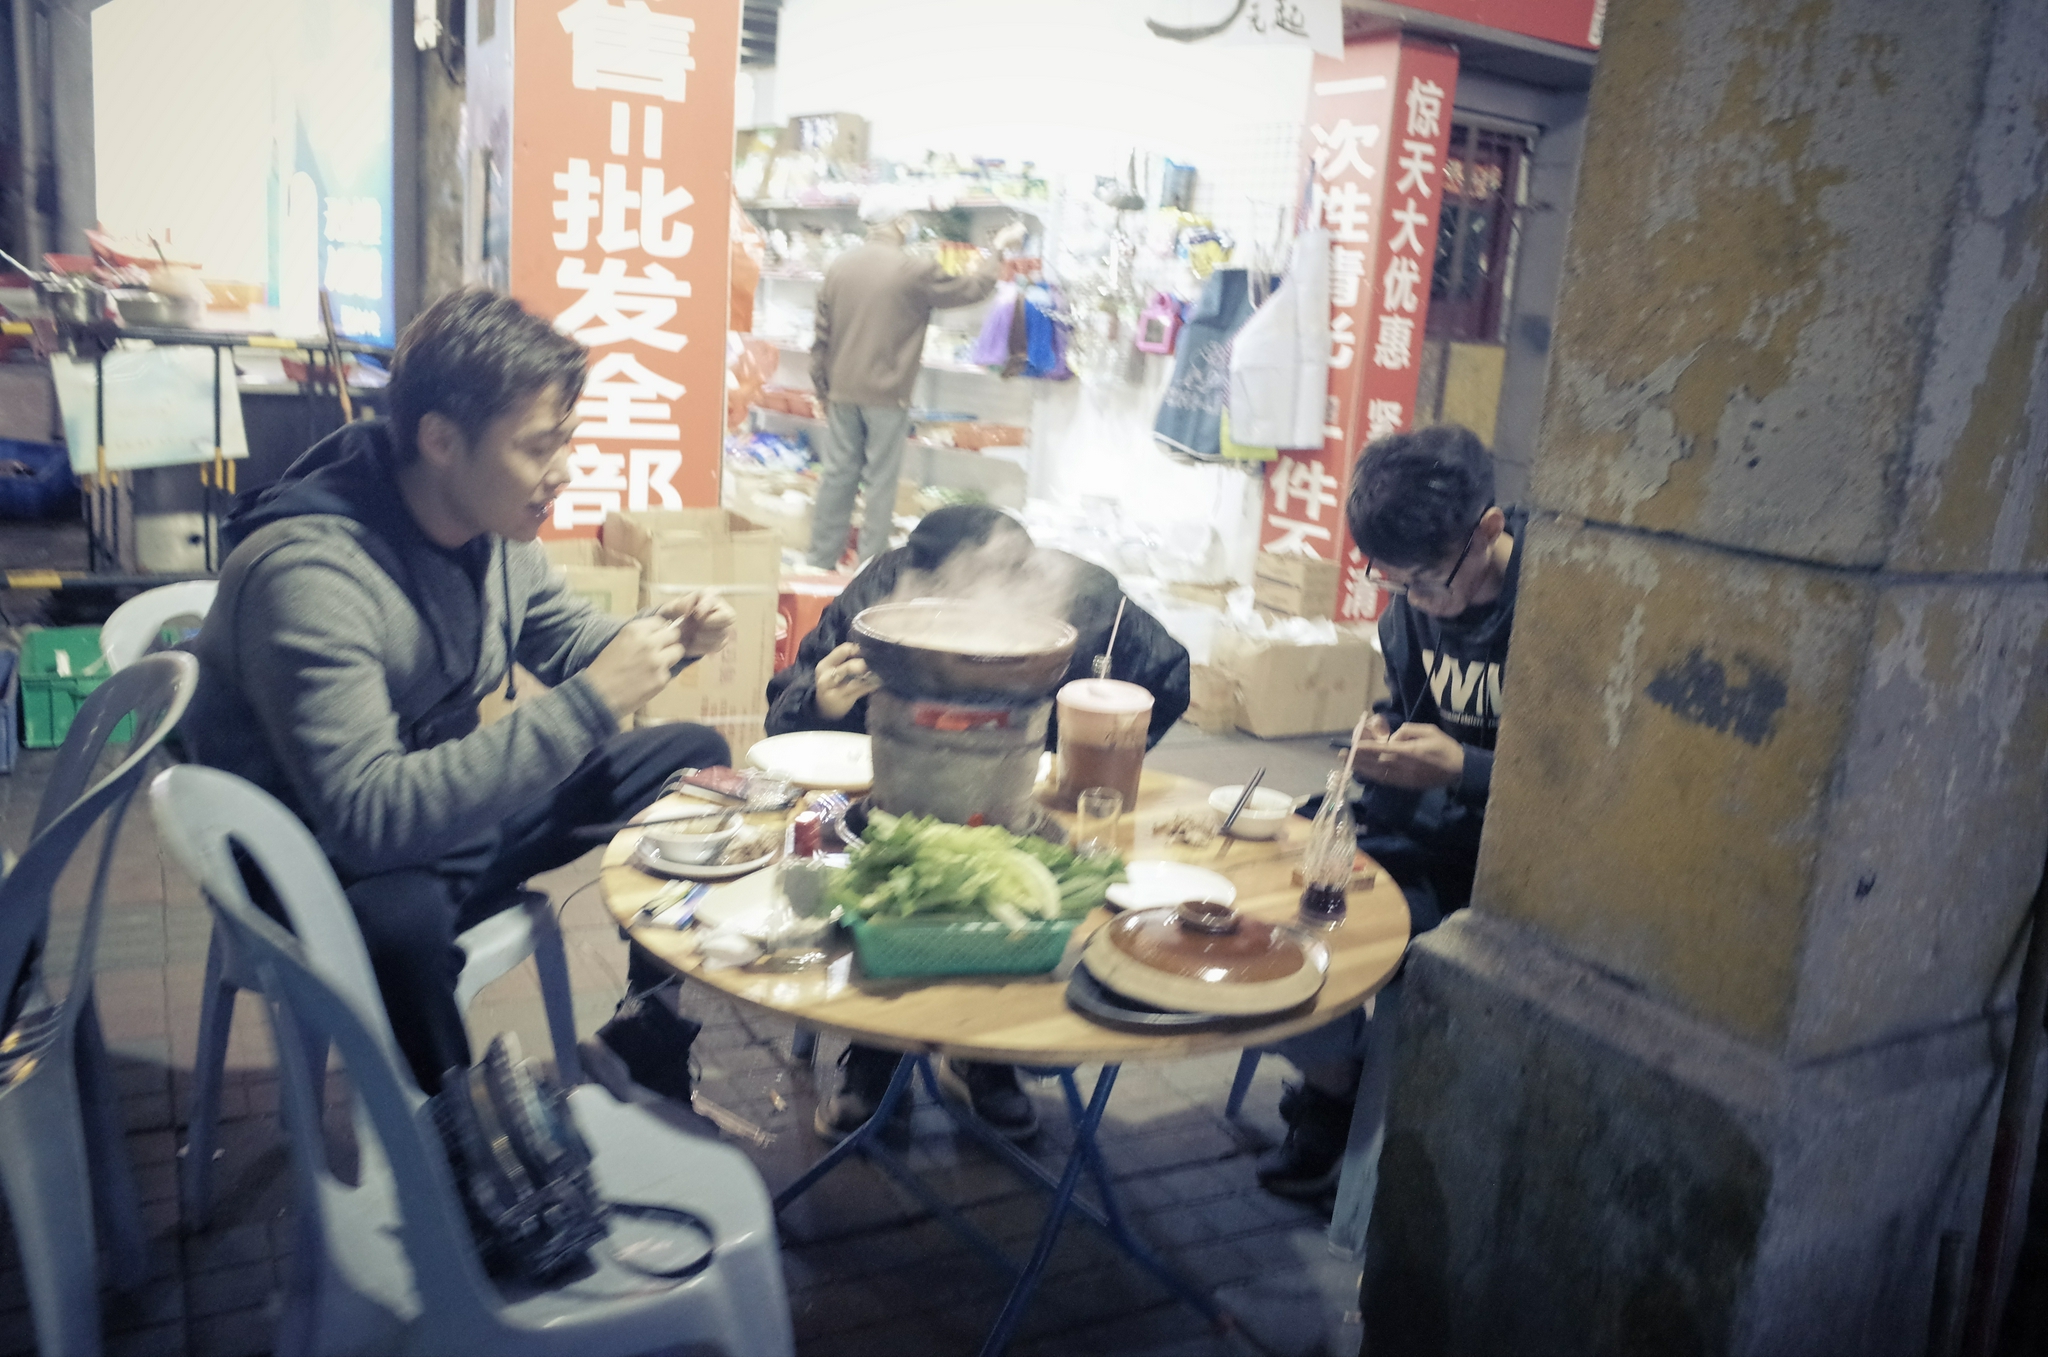 市井化是广州老城生活的典型标志  时代周报记者 黎广/摄